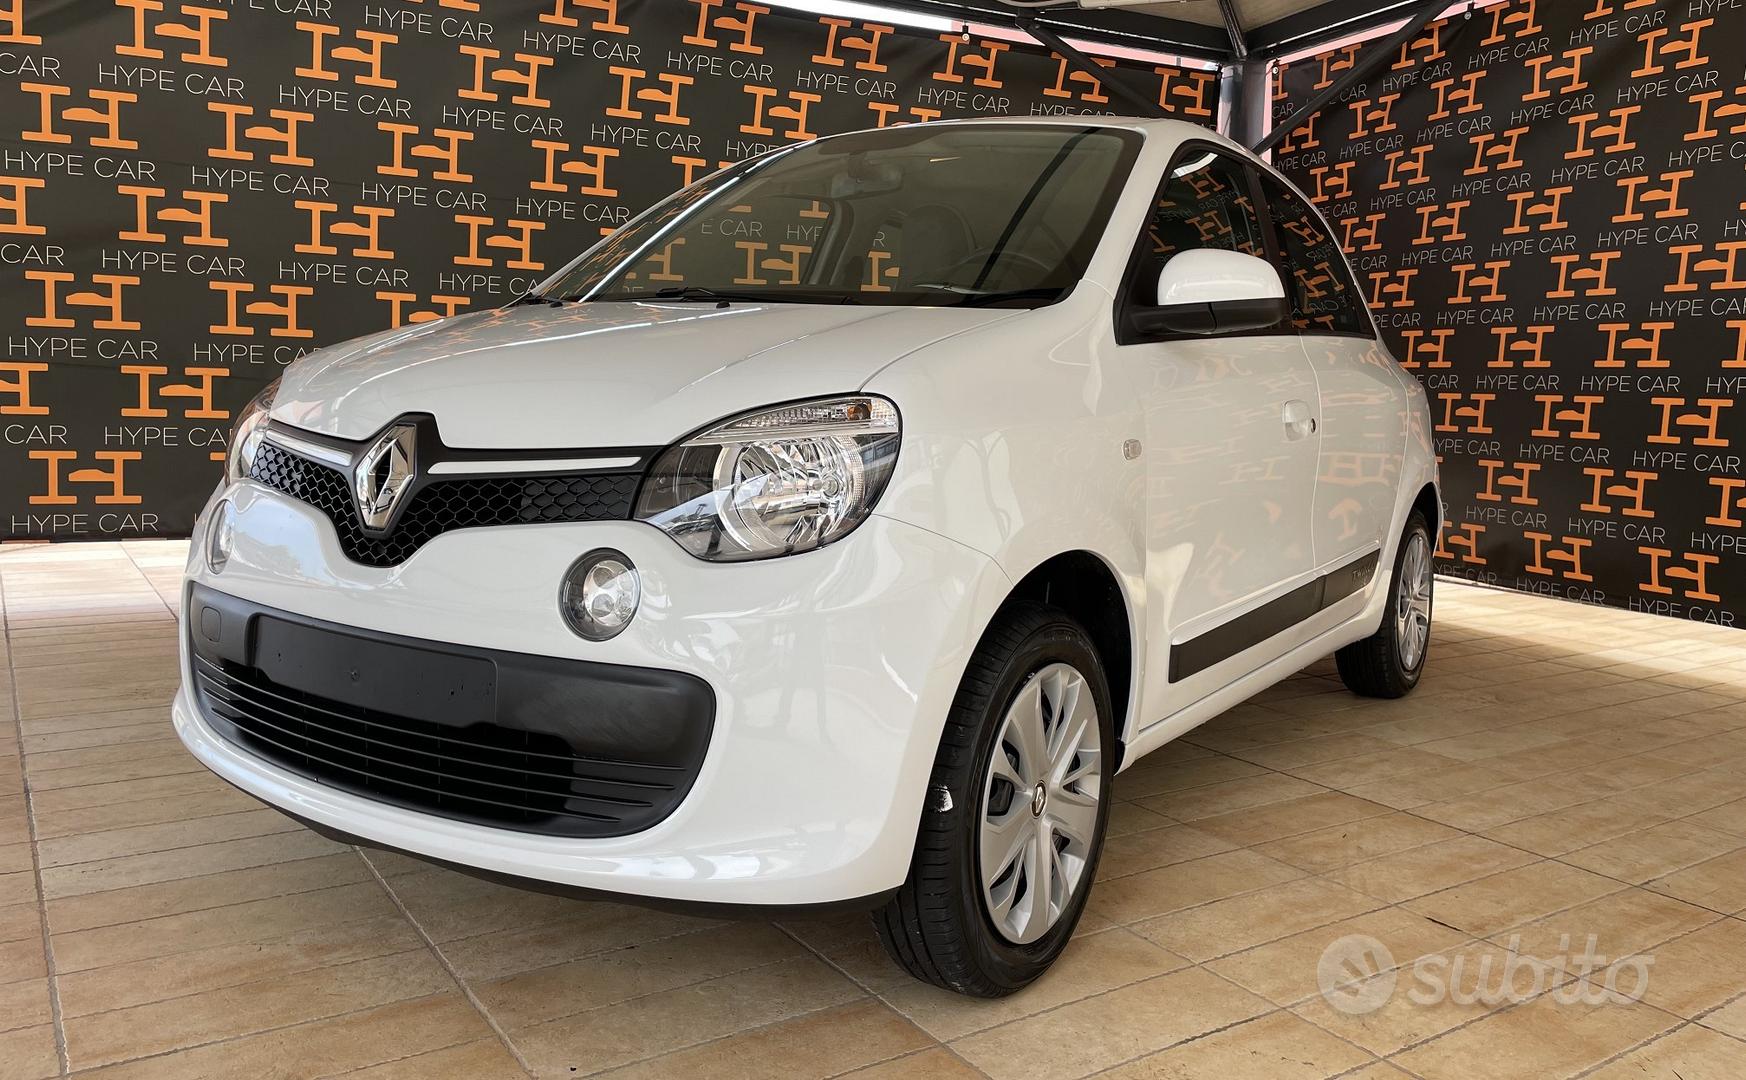 Subito - HYPE CAR - RENAULT Twingo SCe Zen LIMITED - Auto In vendita a Bari